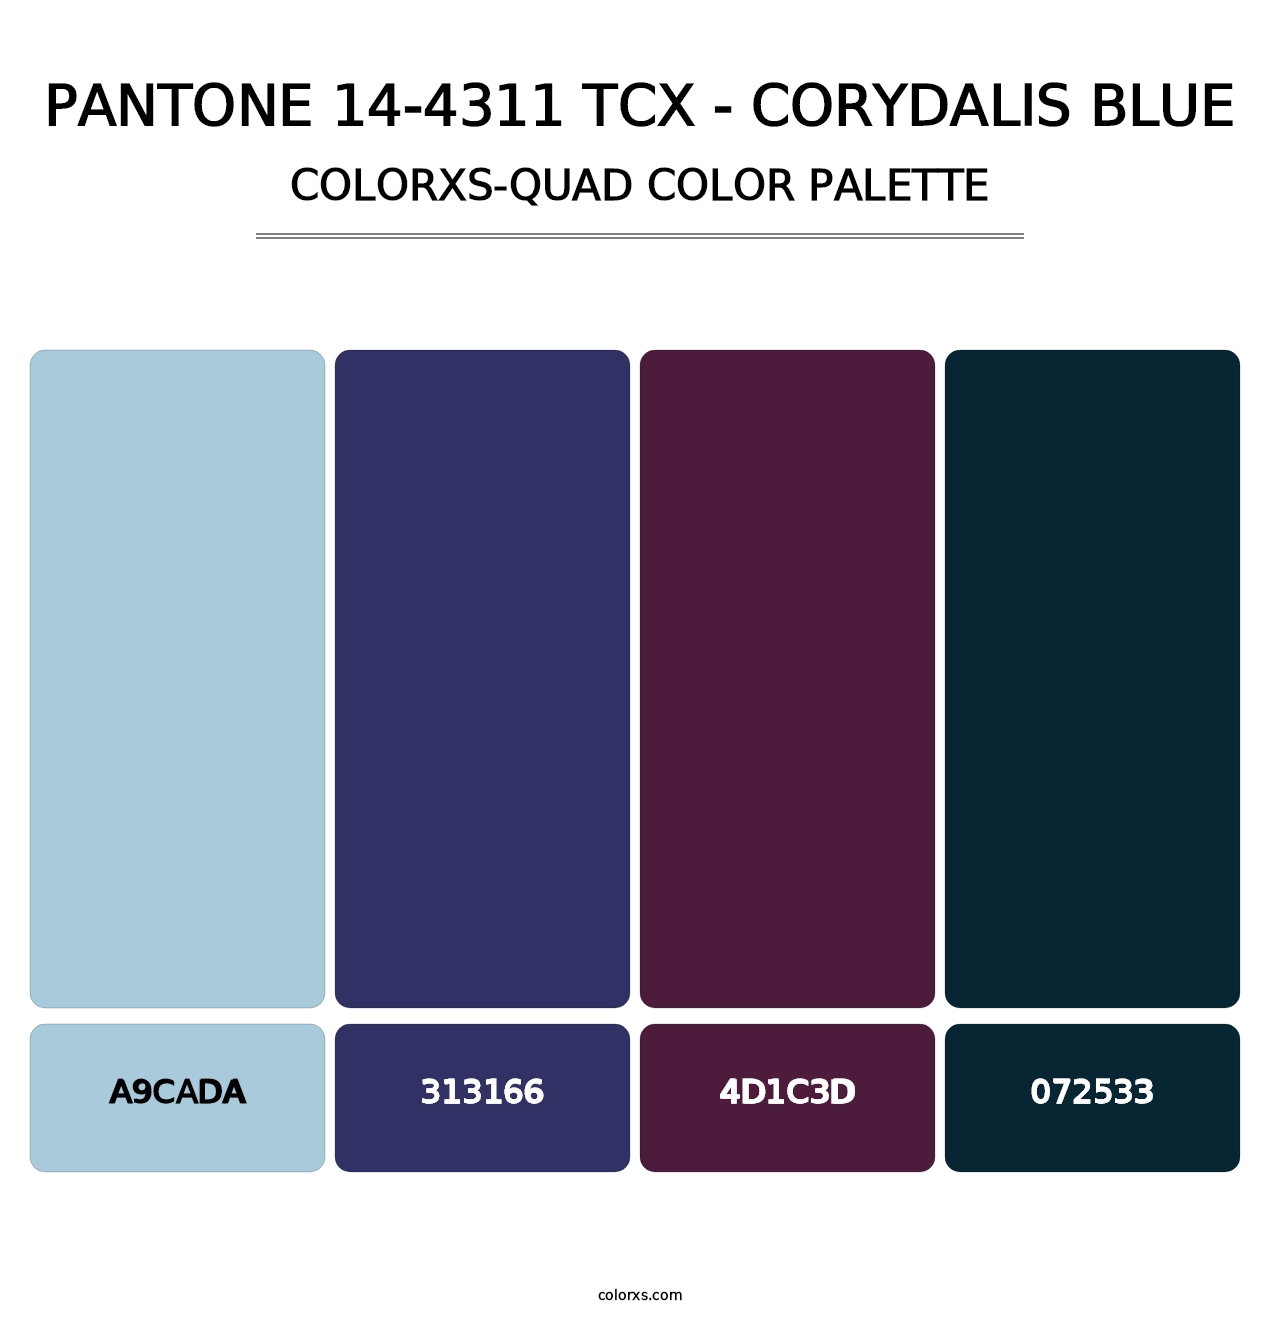 PANTONE 14-4311 TCX - Corydalis Blue - Colorxs Quad Palette